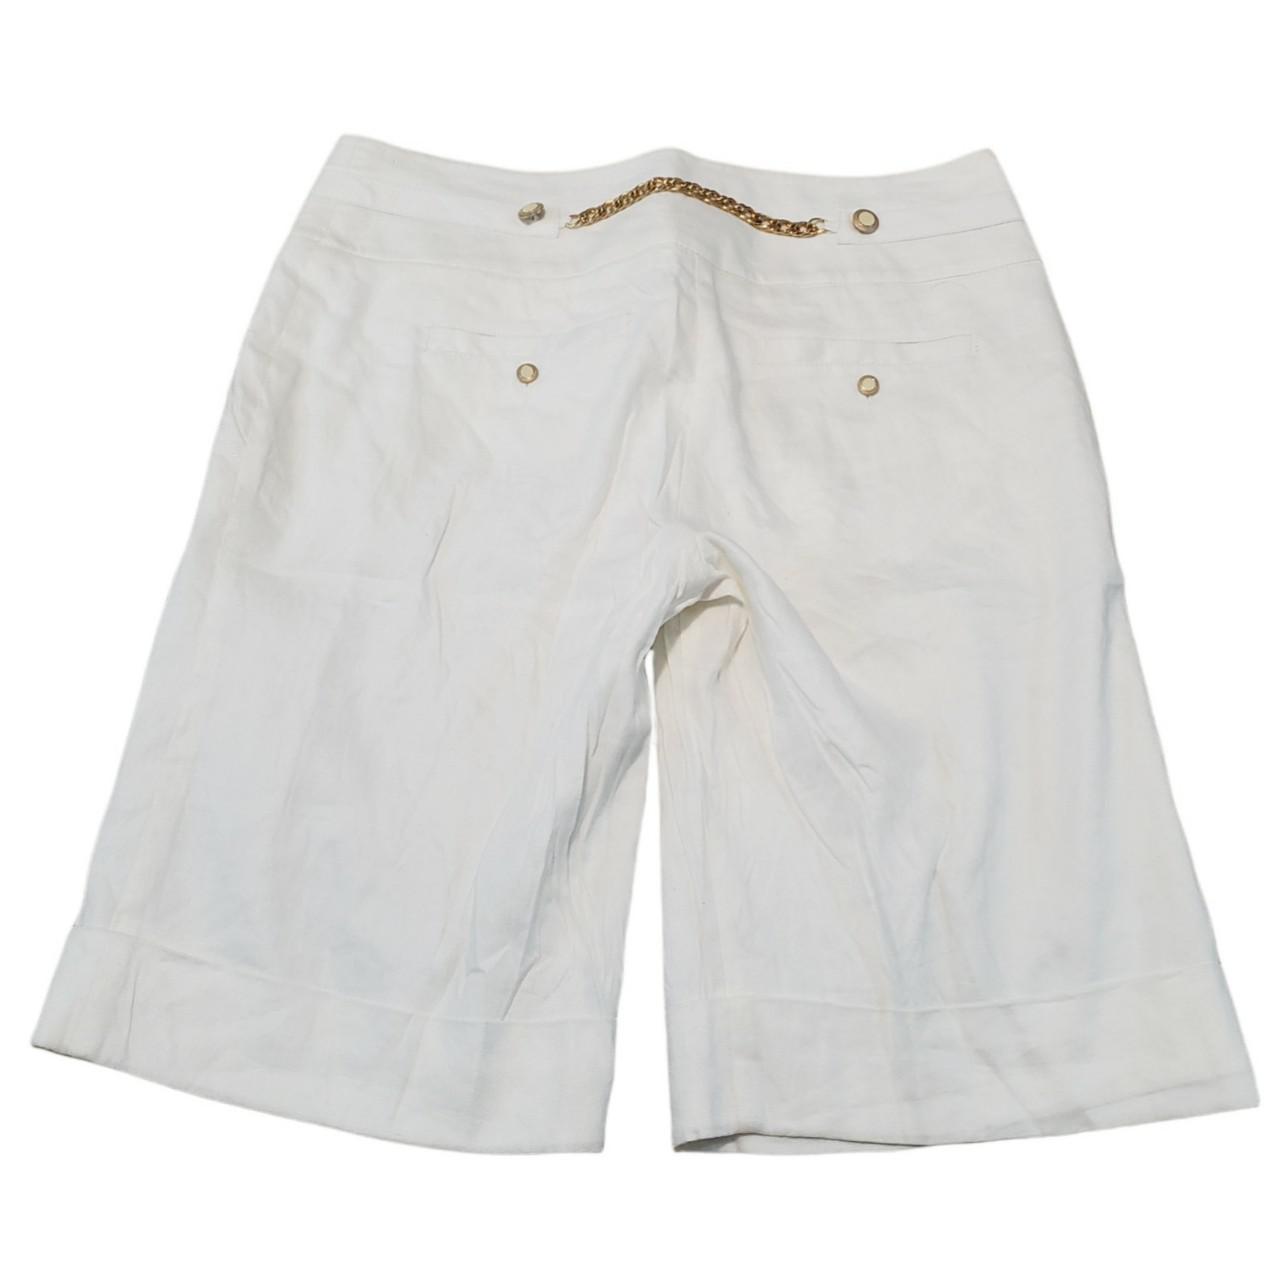 Product Image 2 - Babe Shorts Size 4 Bermuda